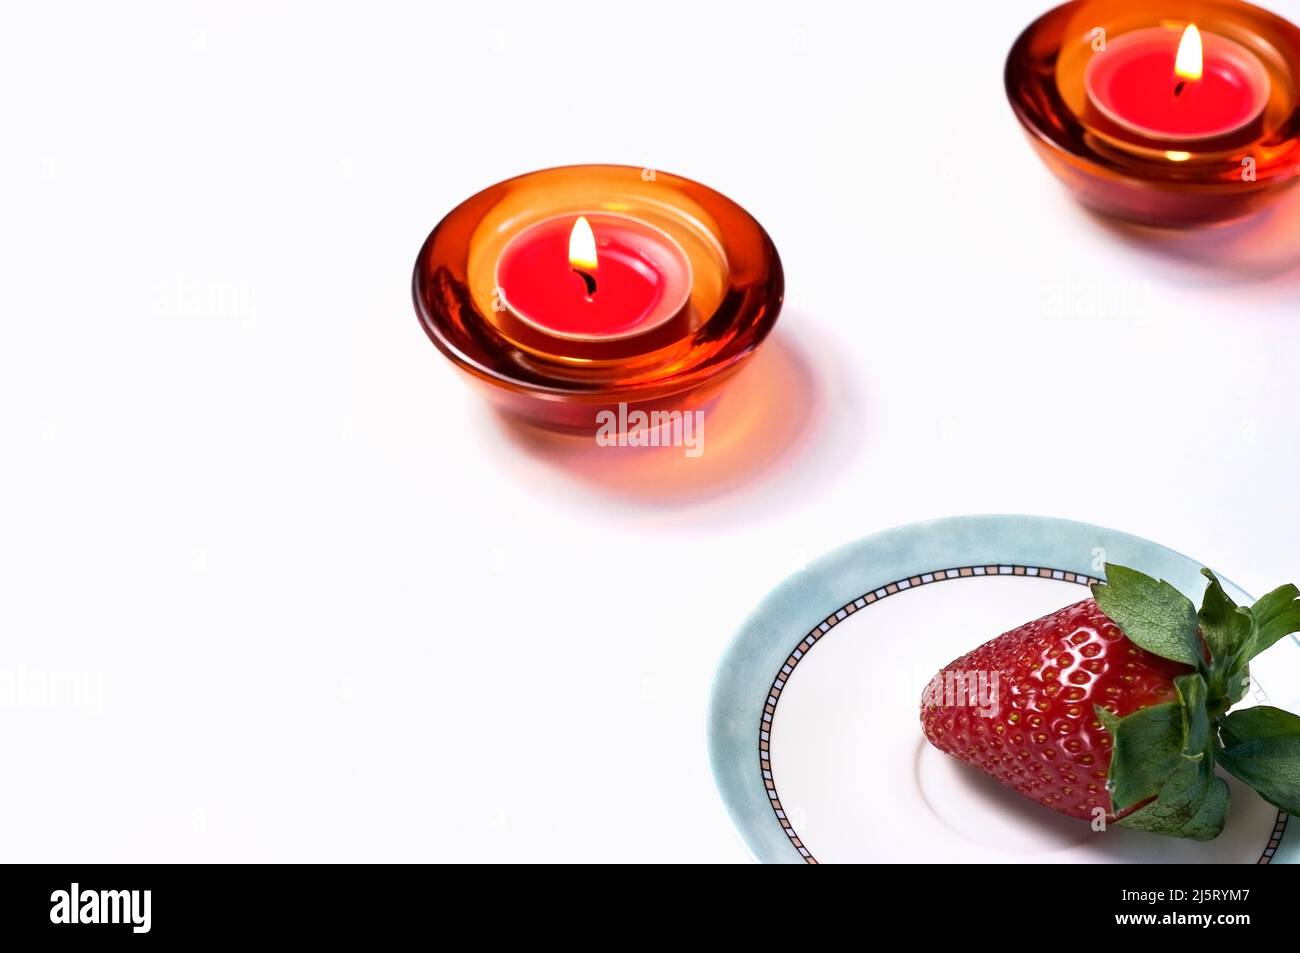 Velas rojas encendidas para meditar antes de comer una fresa grande y deliciosa. Foto de stock